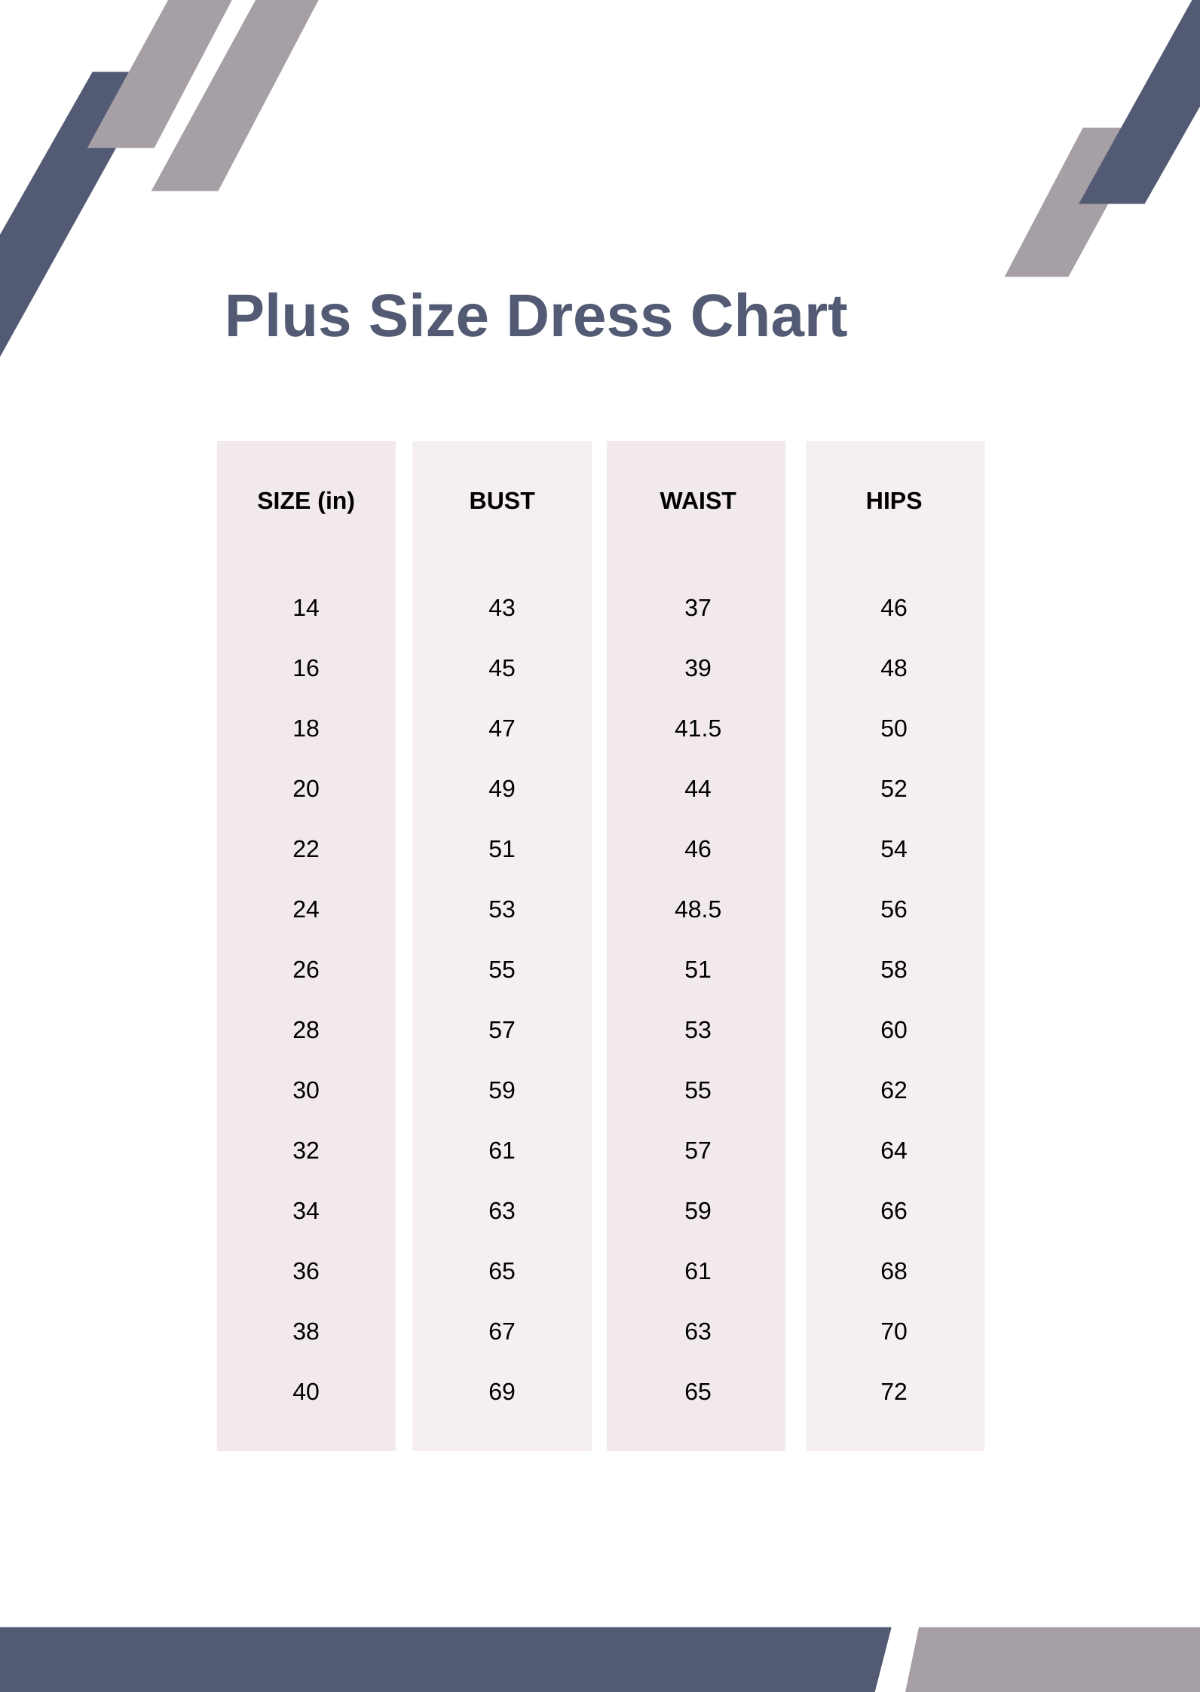 Free Plus Size Dress Size Chart Template